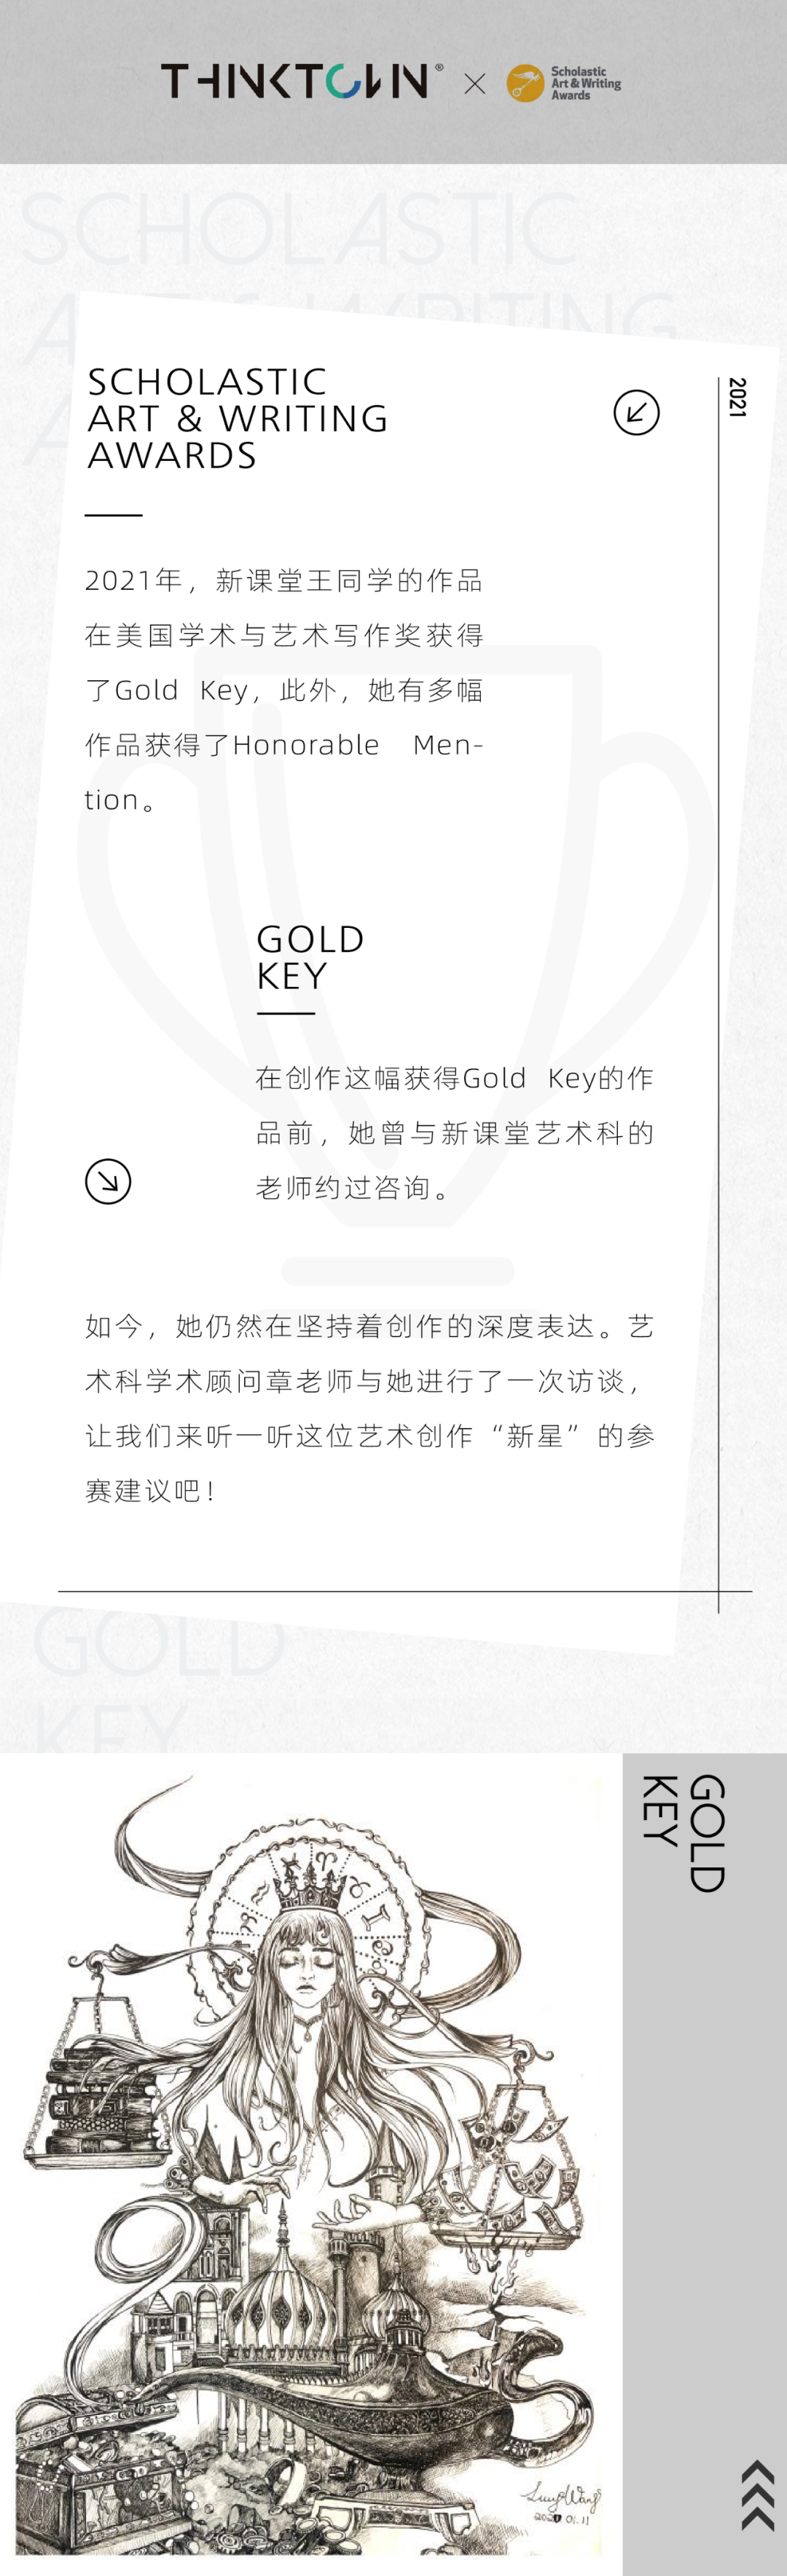 Gold Key获奖专访 │ 艺术创作传递的是独特、纯粹、真诚